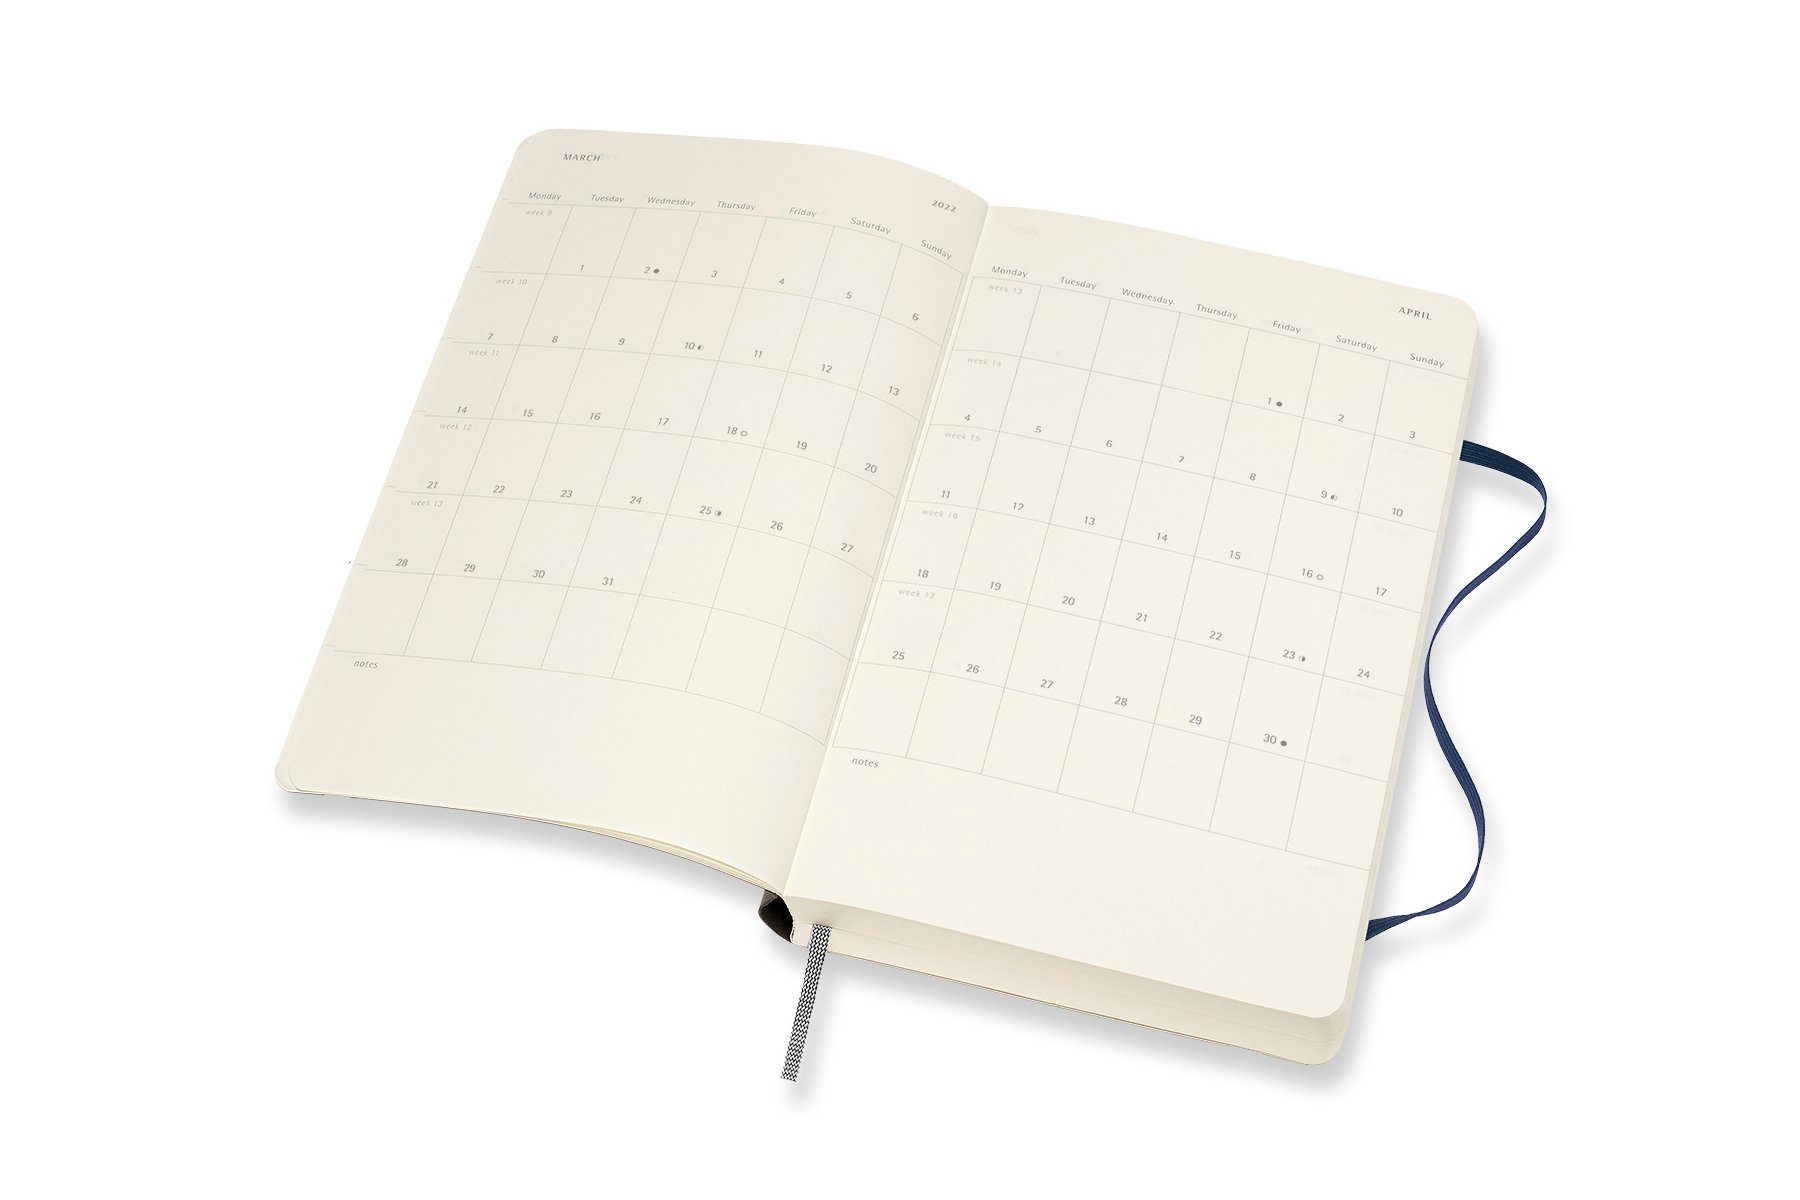 MOLESKINE Buchkalender, 18 Monate Tageskalender 2021/2022 - Weicher Einband  - Englischer Kalender - Large/A5 - 1 Tag = 1 Seite - Rechts Linierte Seite  - Schwarz